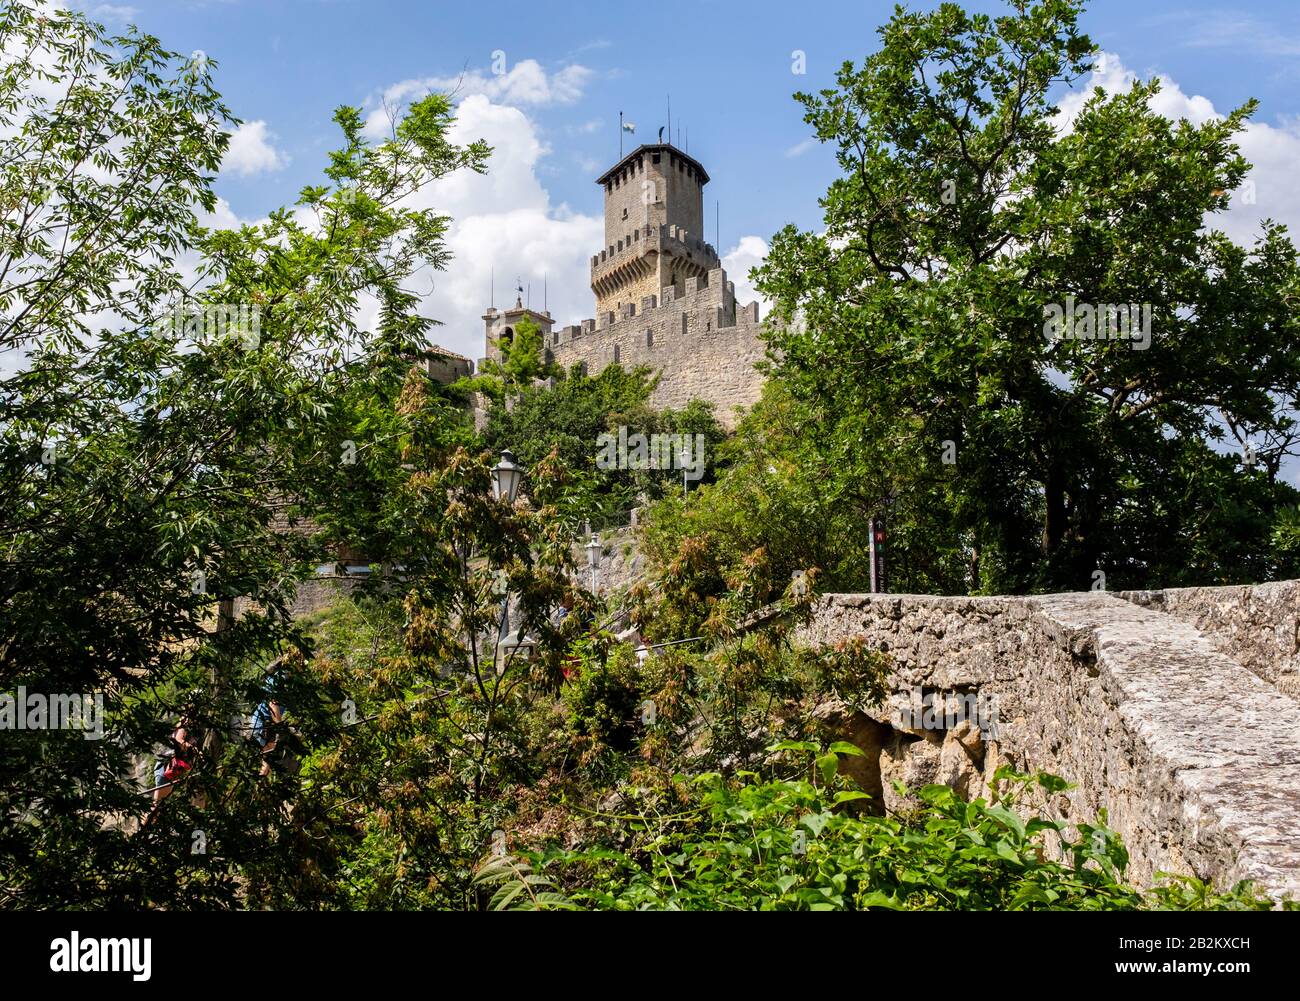 Murallas de piedra fortificadas y torres de castillo a lo largo de las montañas de San Marino en el sur de Europa Foto de stock